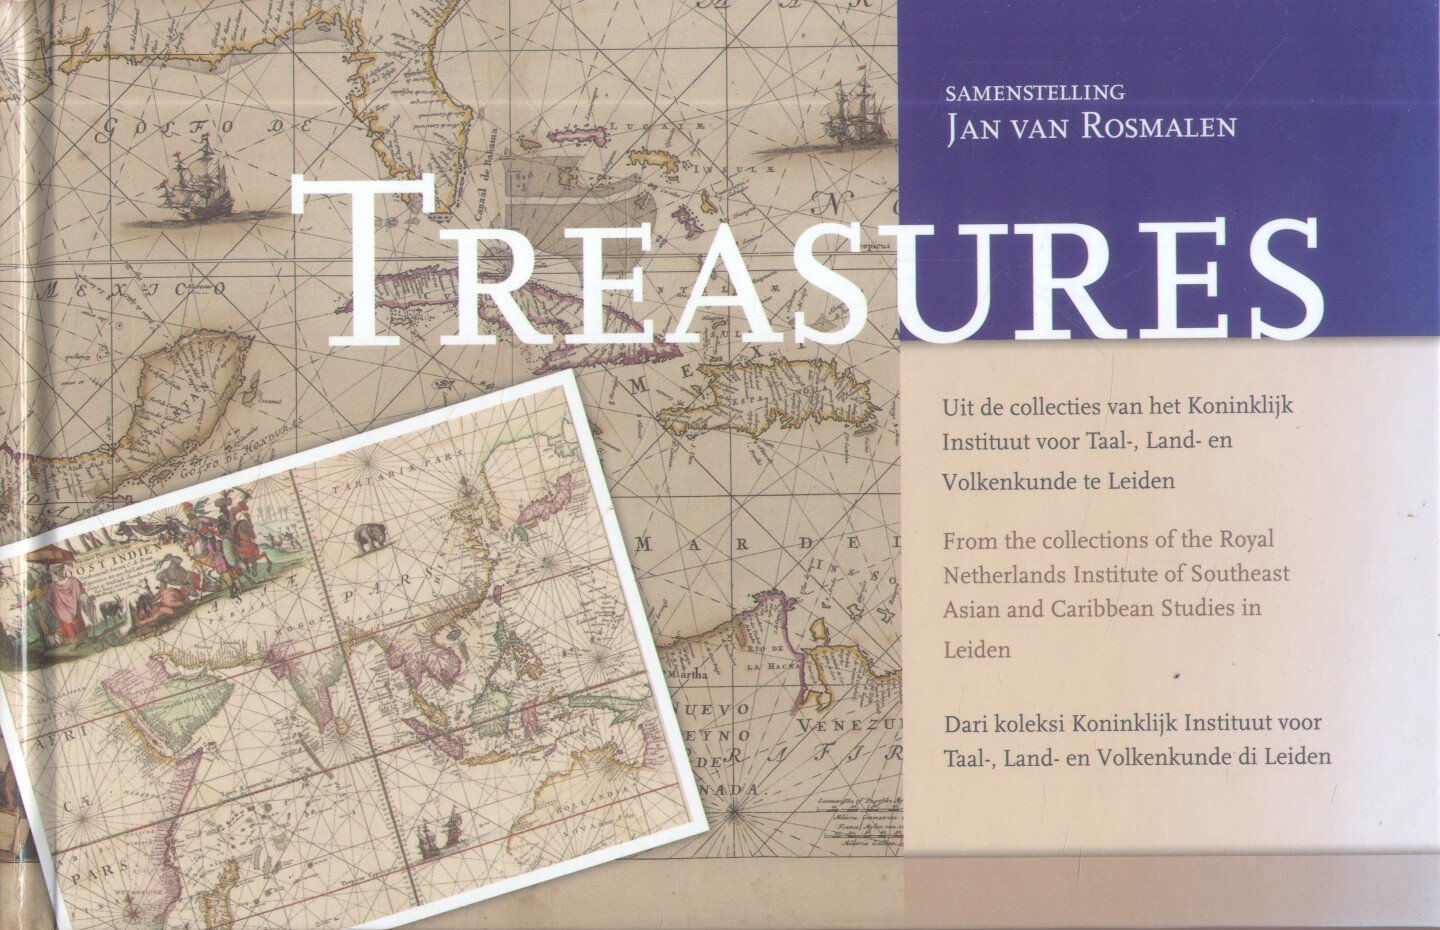 Rosmalen, Jan van (samenstelling) - Treasures (Uit de collectie van het Koninklijk Instituut voor Taal-, Land- en Volkenkunde Leiden)